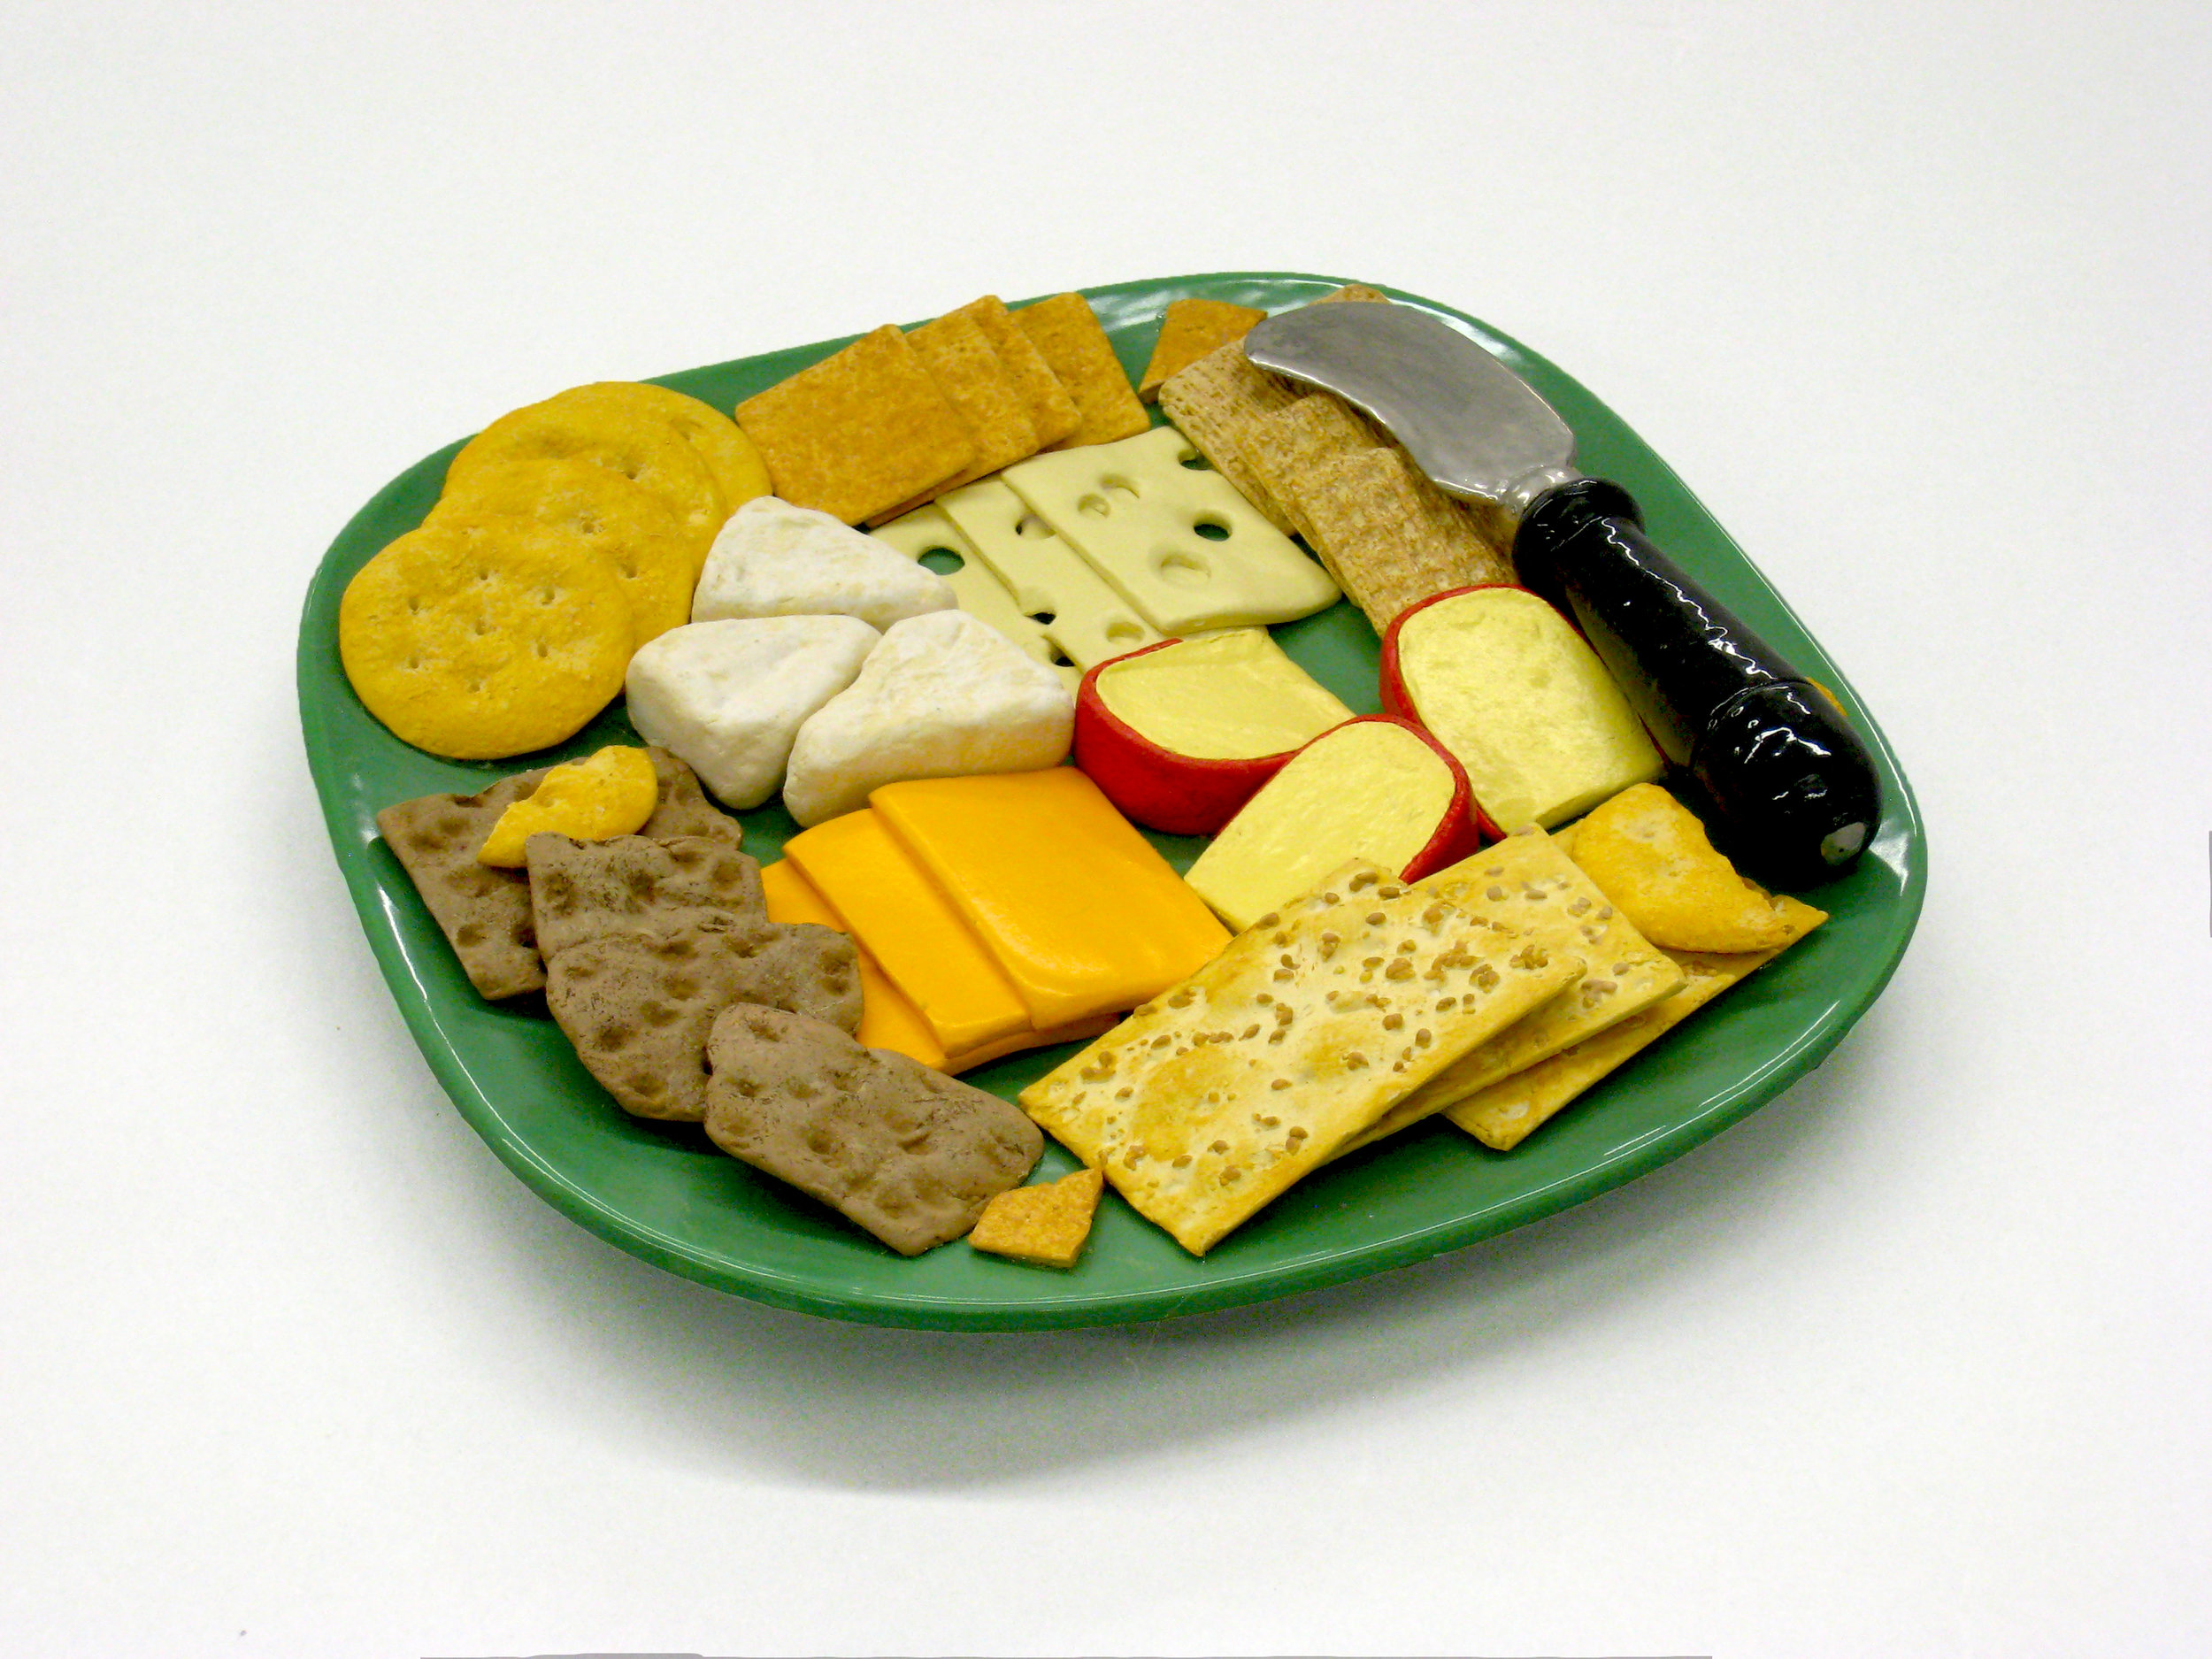 Cheese 'n' Crackers